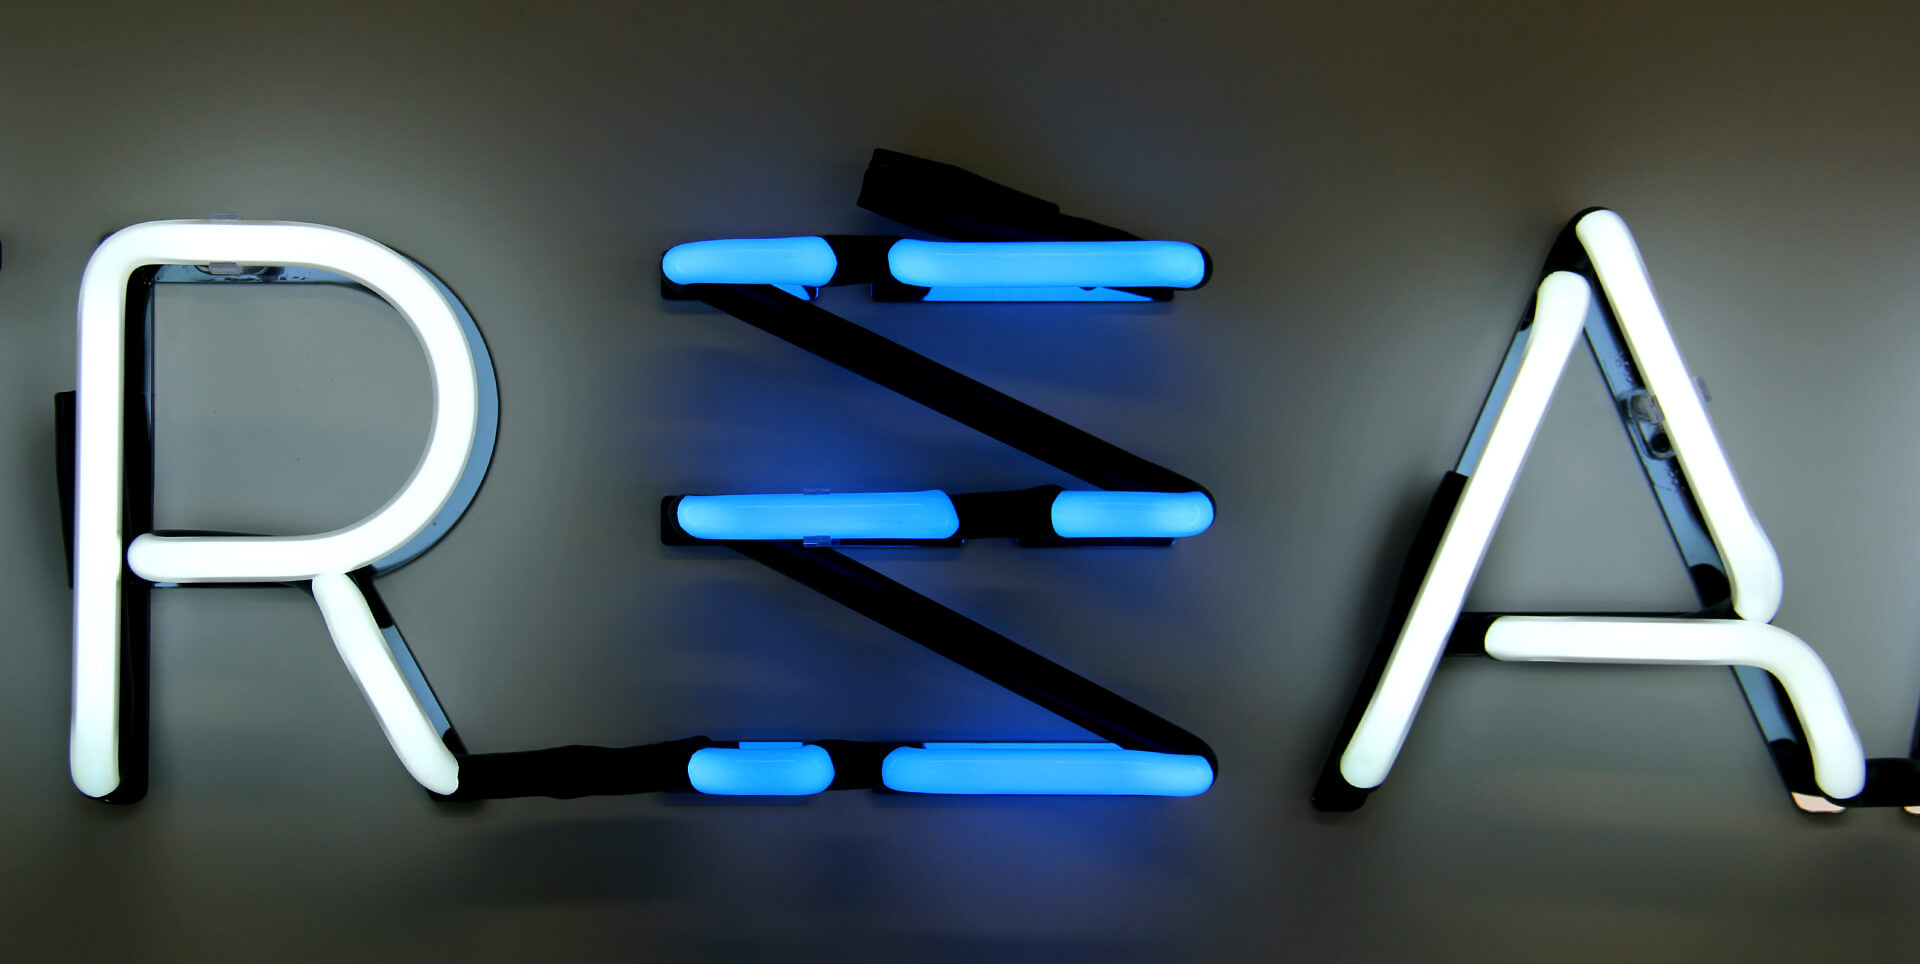 STREAM - Neonbuchstaben in zwei Farben